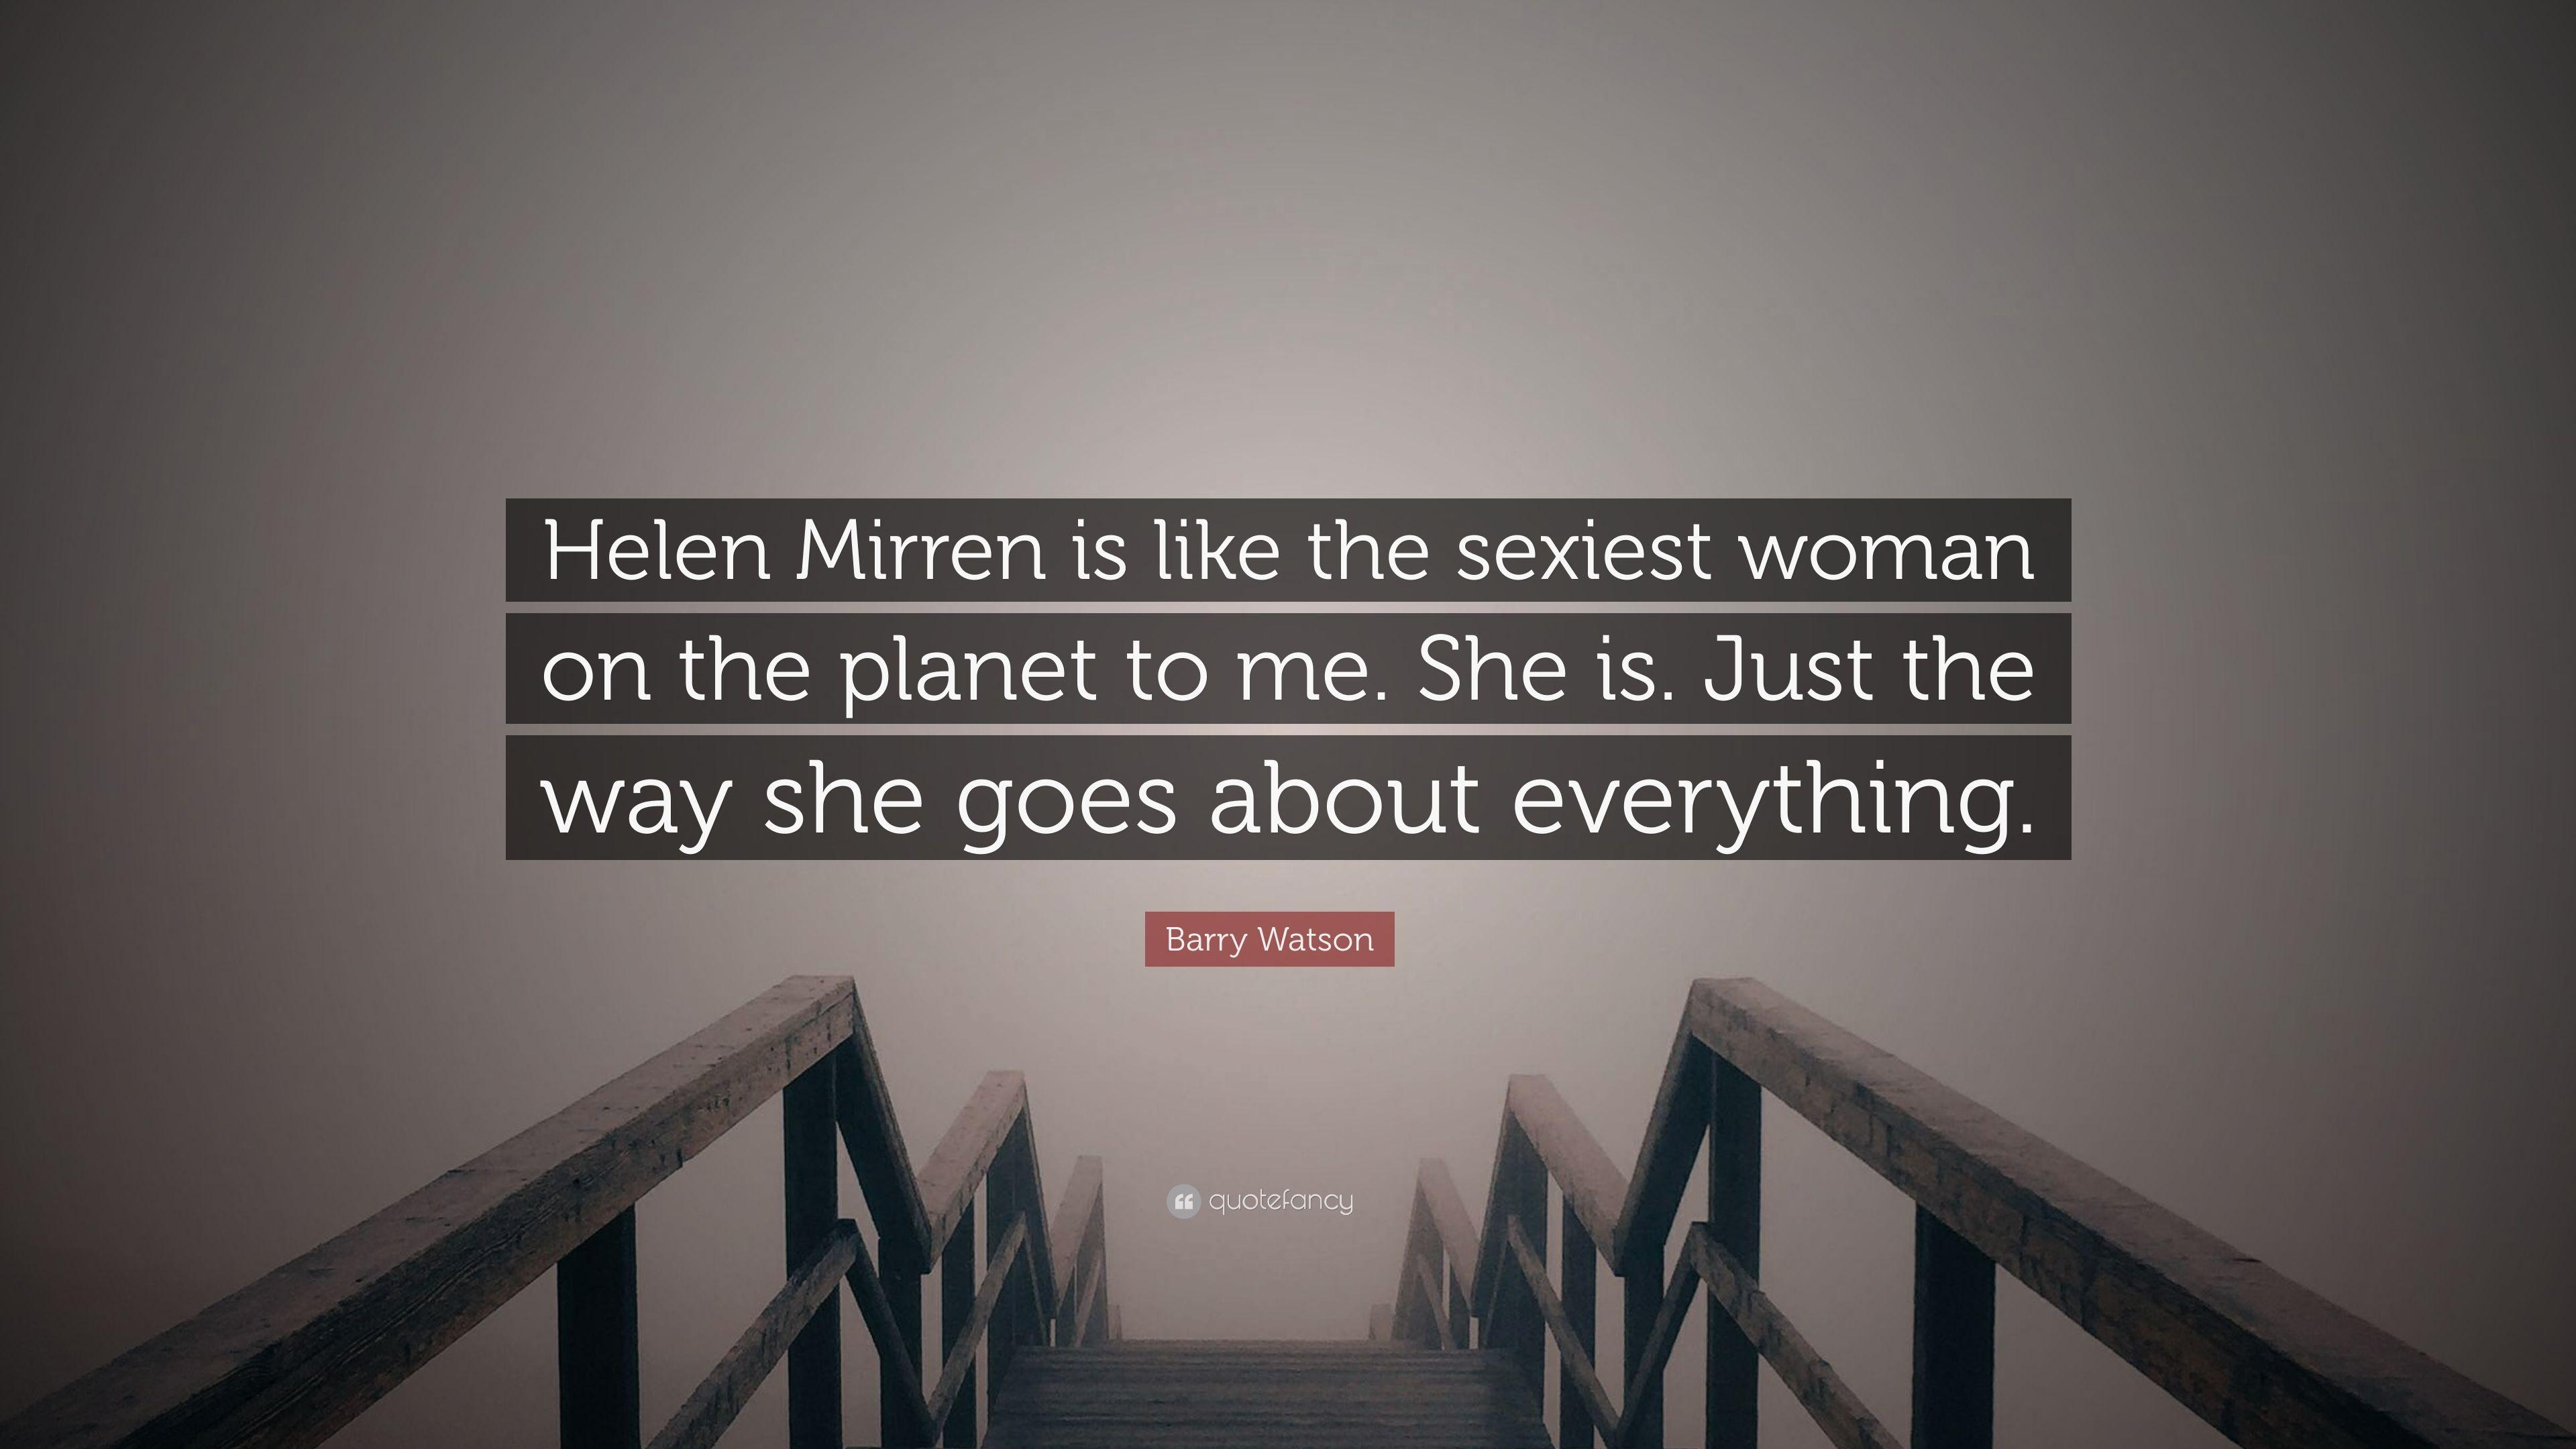 Barry Watson Quote: “Helen Mirren is like the woman on